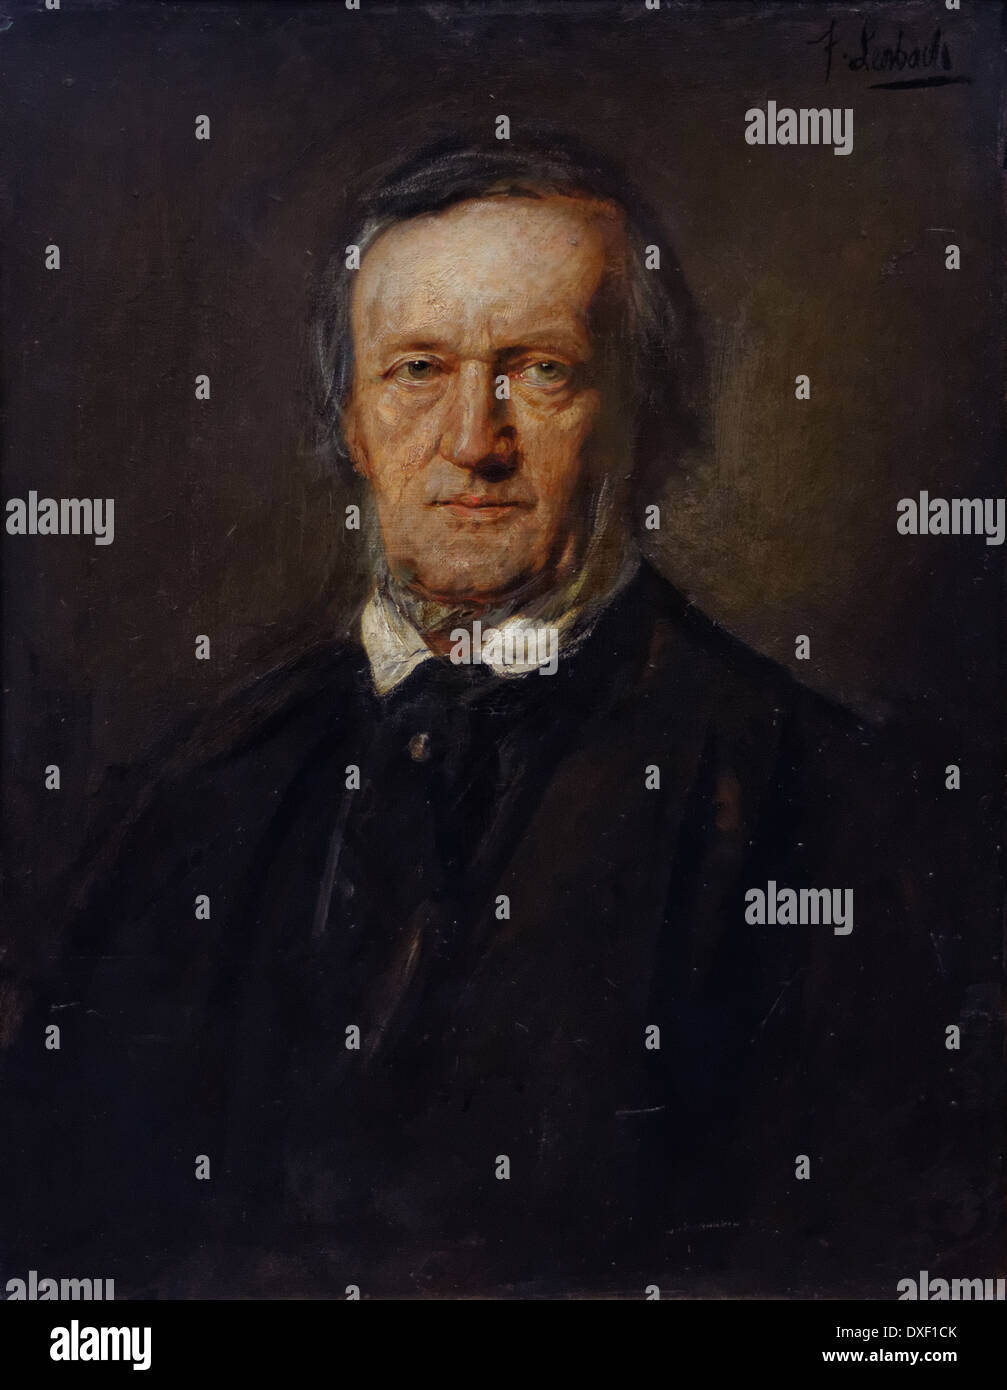 Franz von Lenbach - Portrait de Richard Wagner - 1895 - XIX e siècle - École allemande - Alte Nationalgalerie - Berlin Banque D'Images